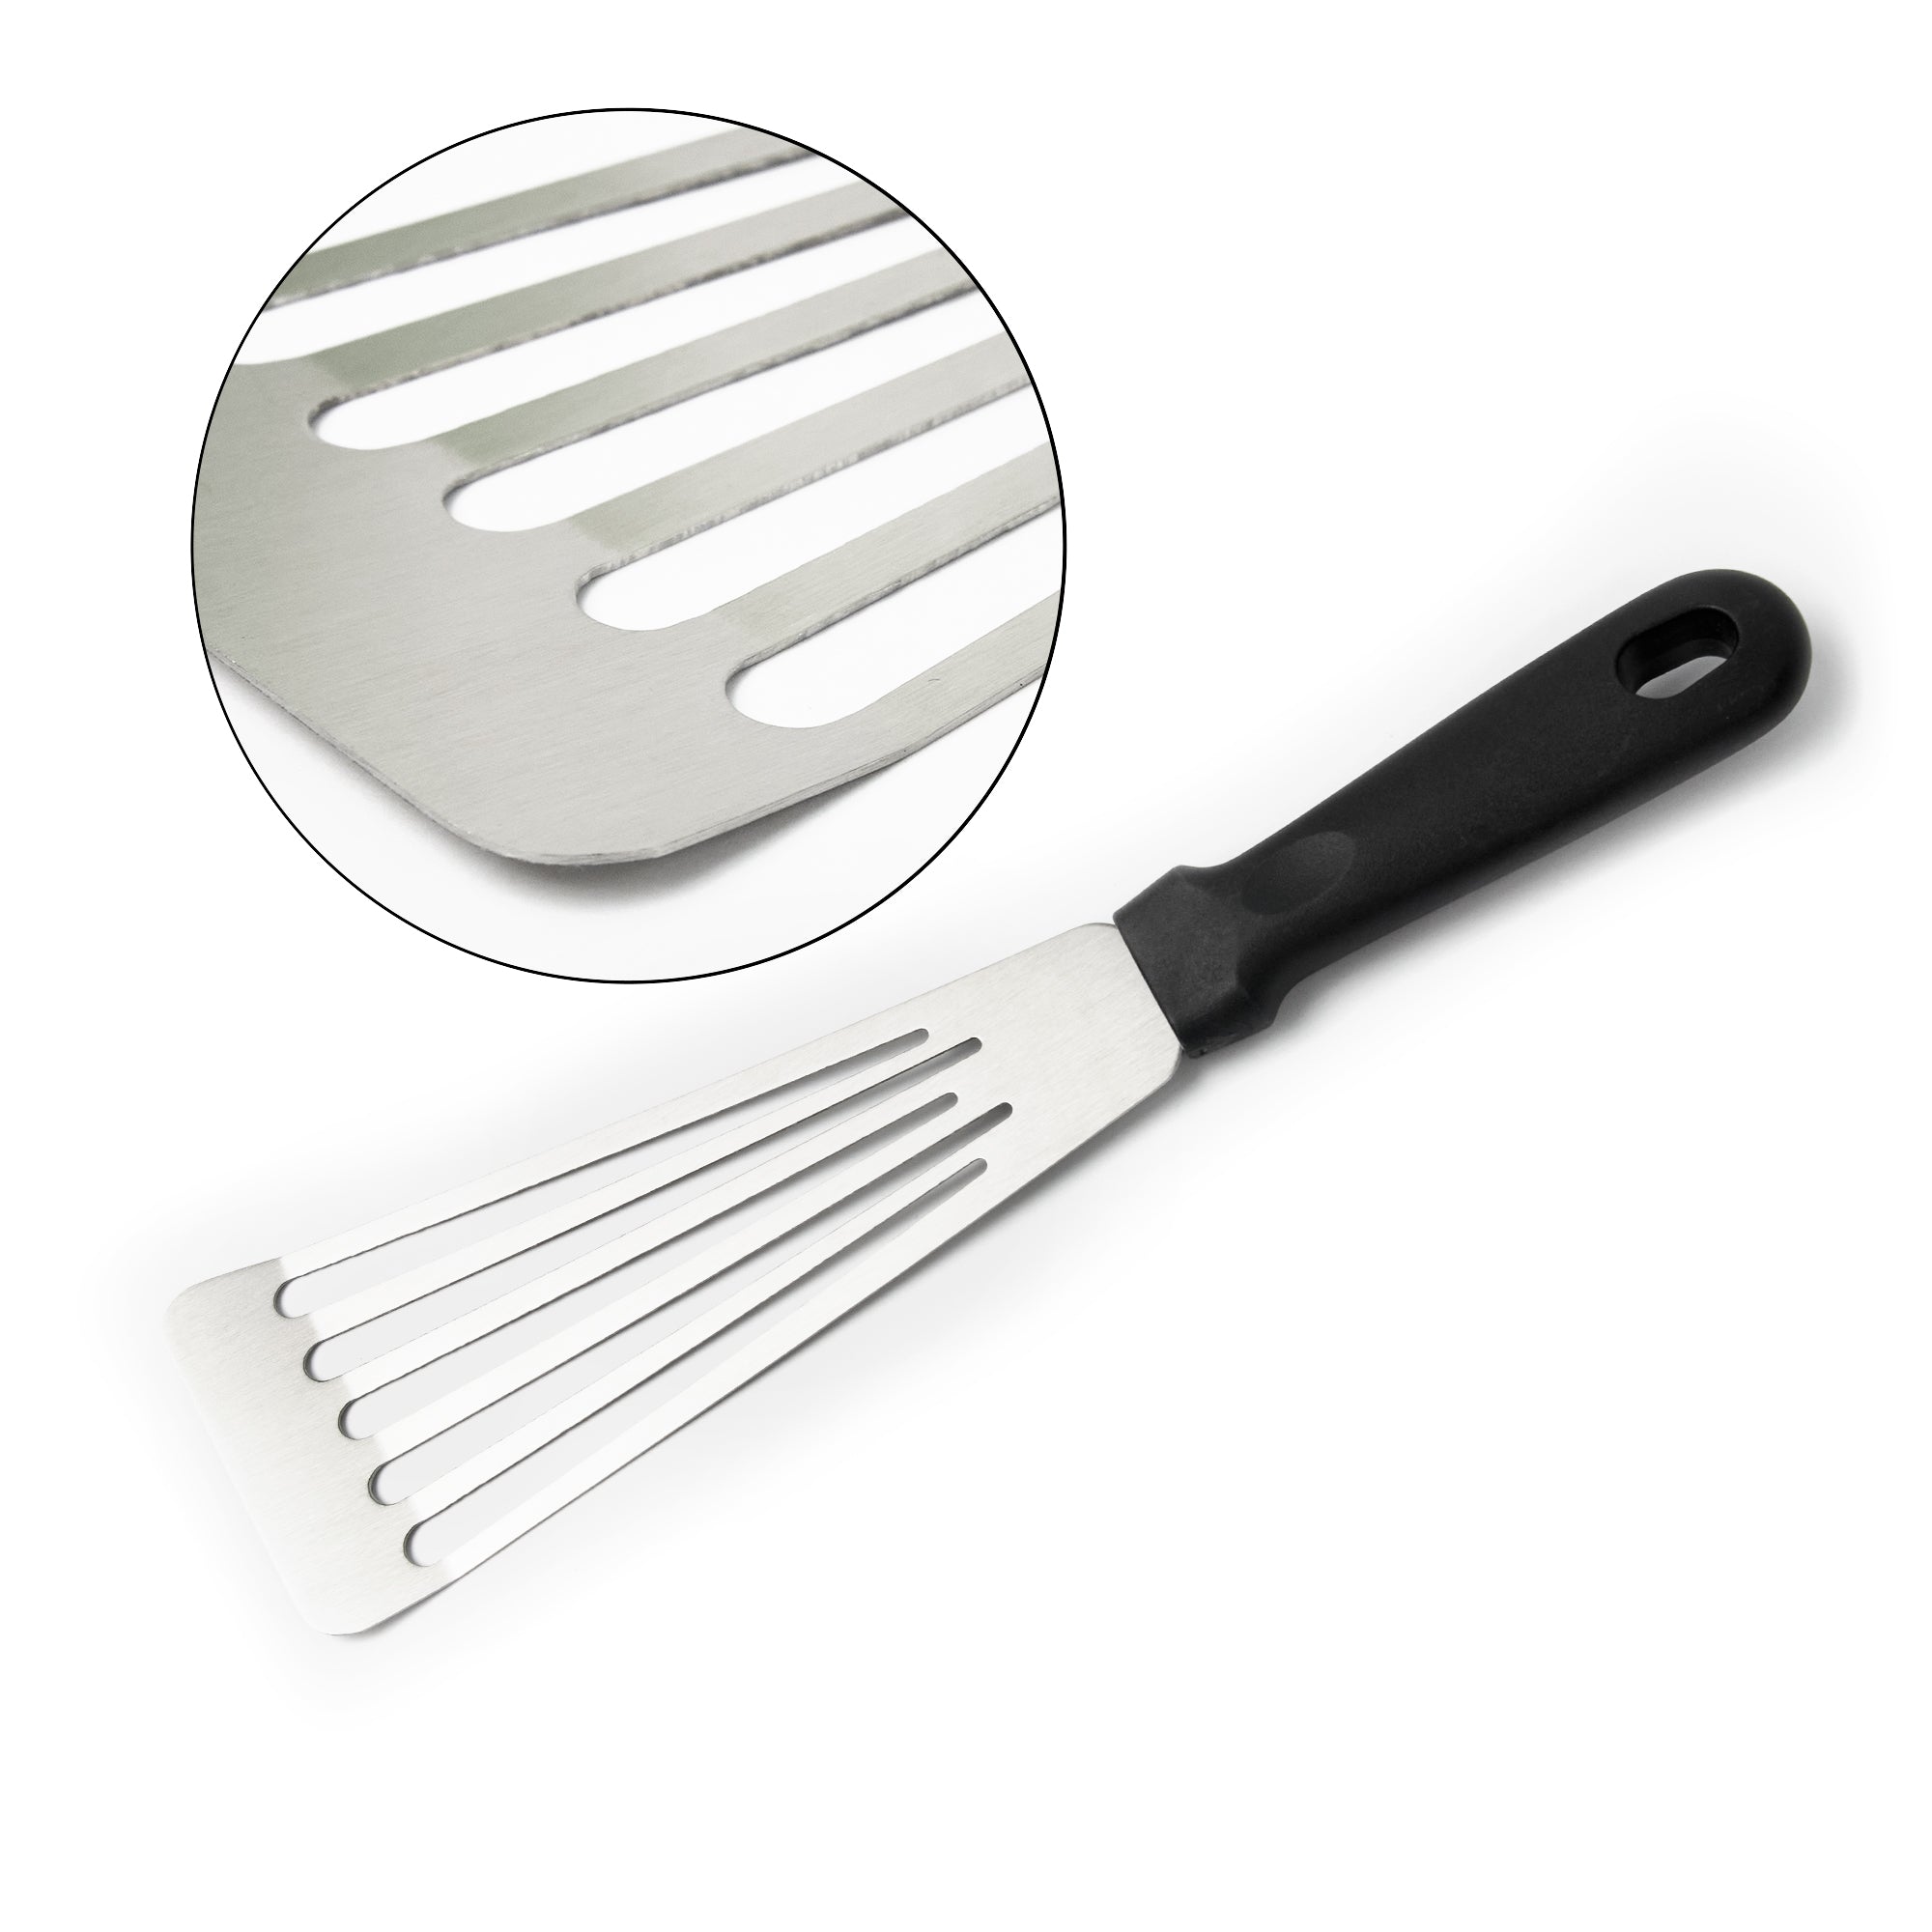 Multi-purpose flexible kitchen spatula